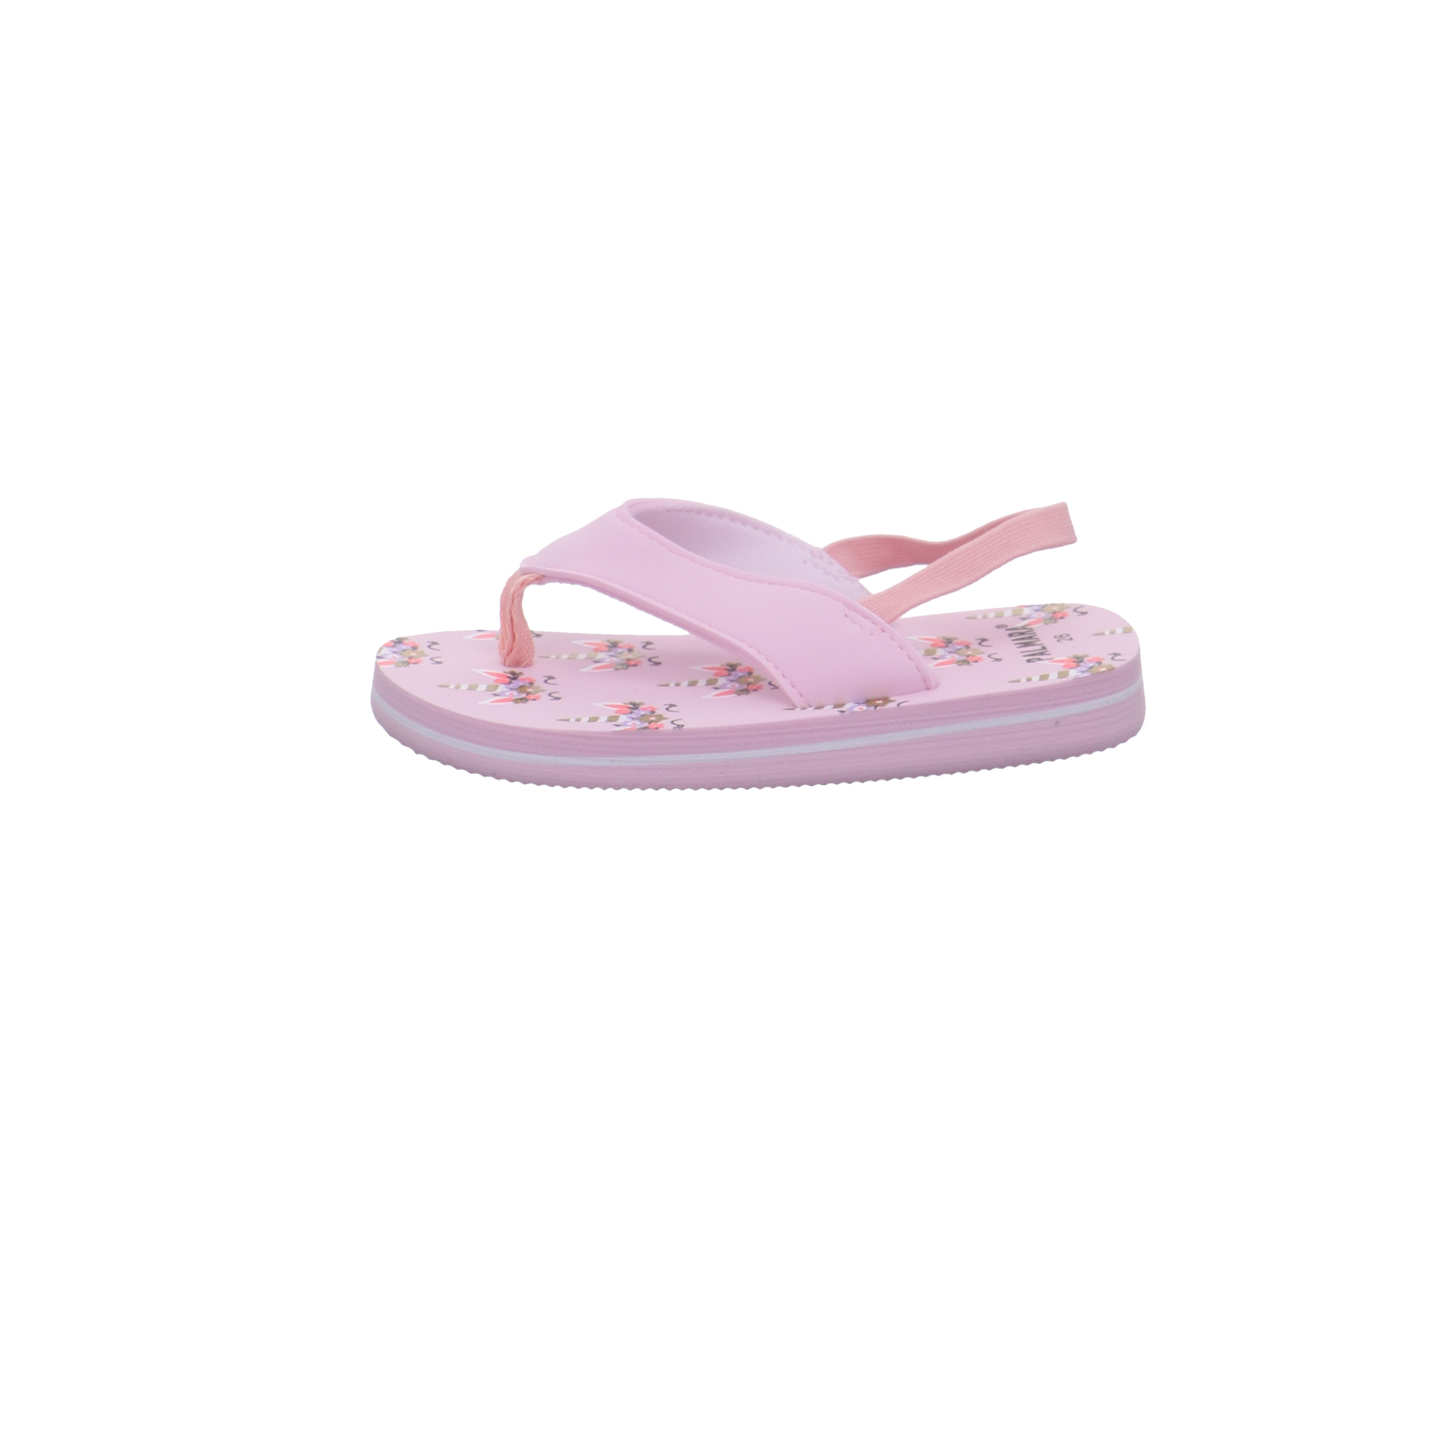 Palmara Schuhe  rose Bild1